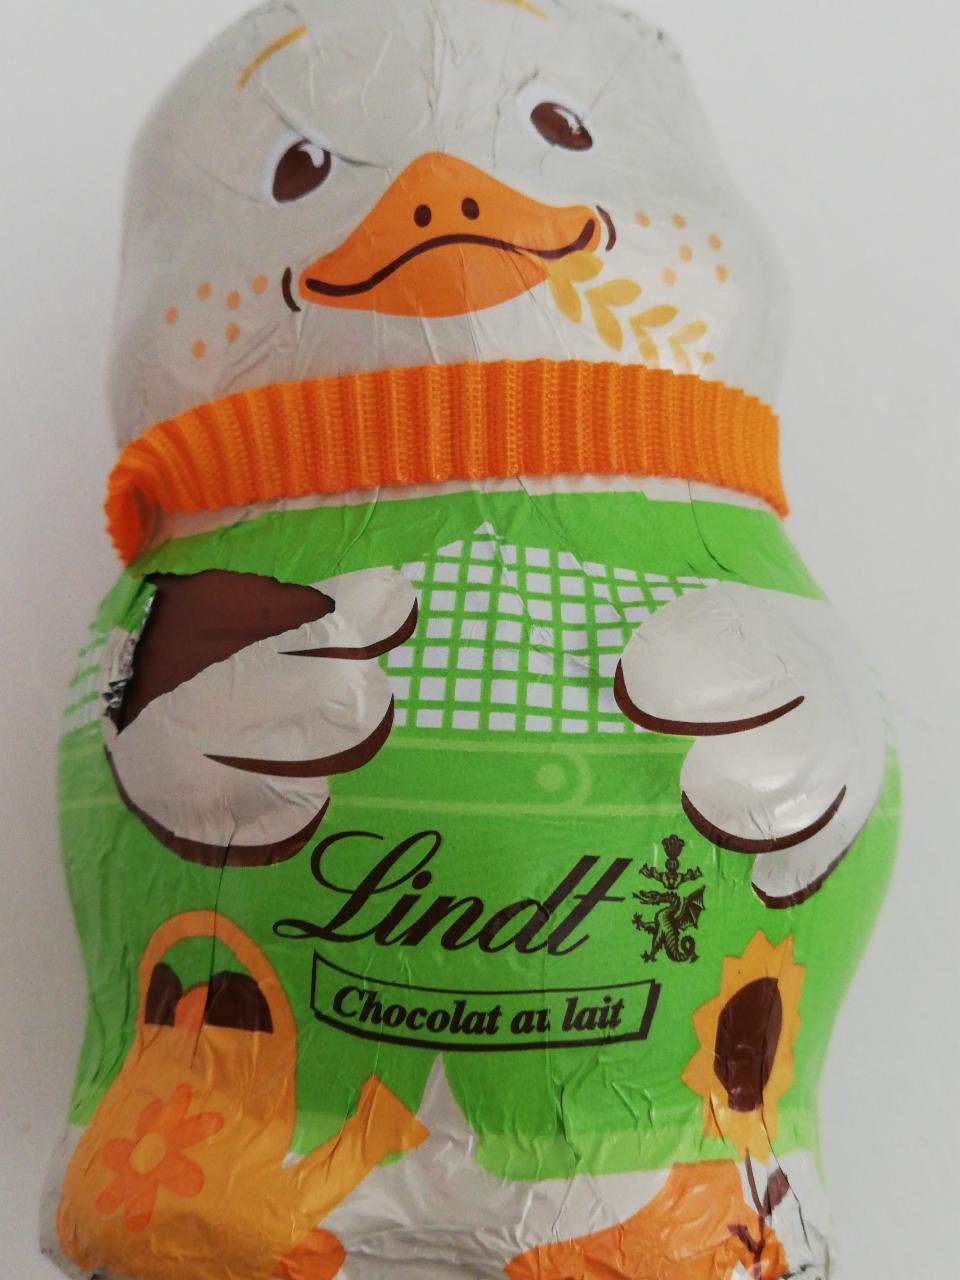 Fotografie - Kuřátko Chocolat au lait Lindt